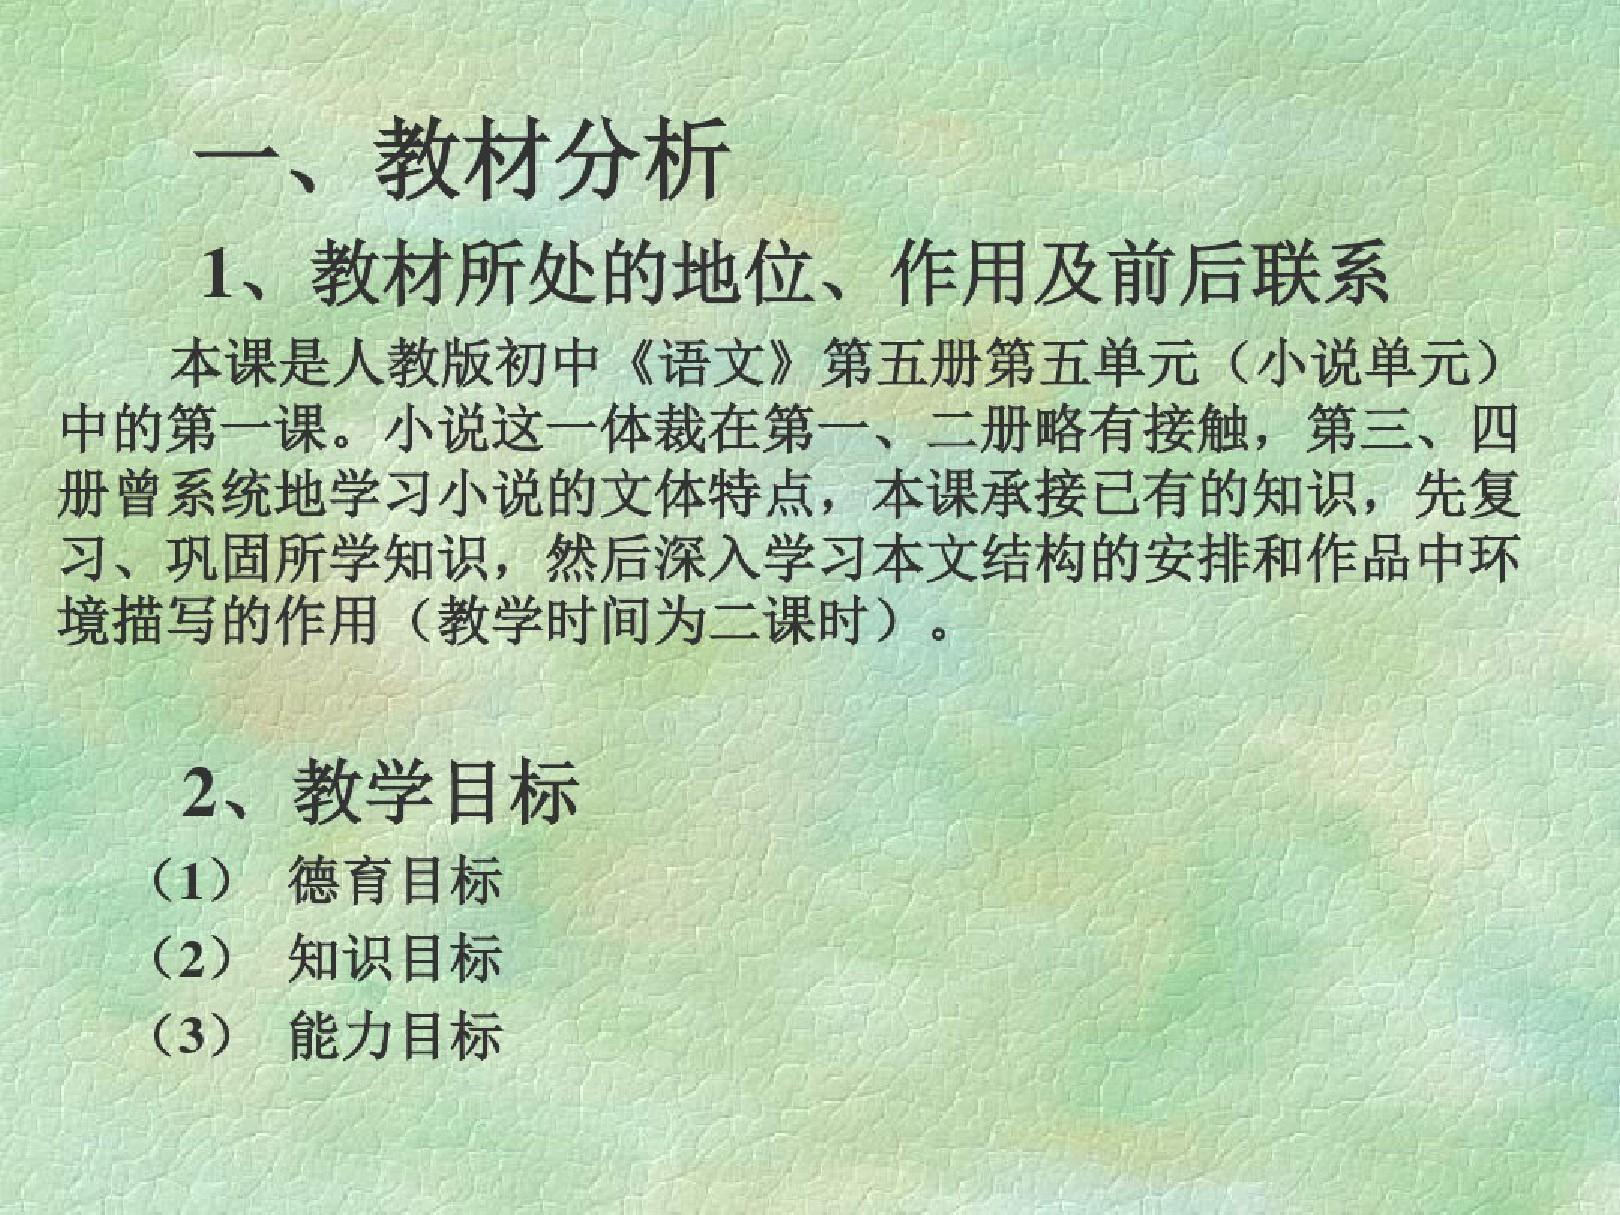 教材人教版初中语文第五册(1)-27页文档资料